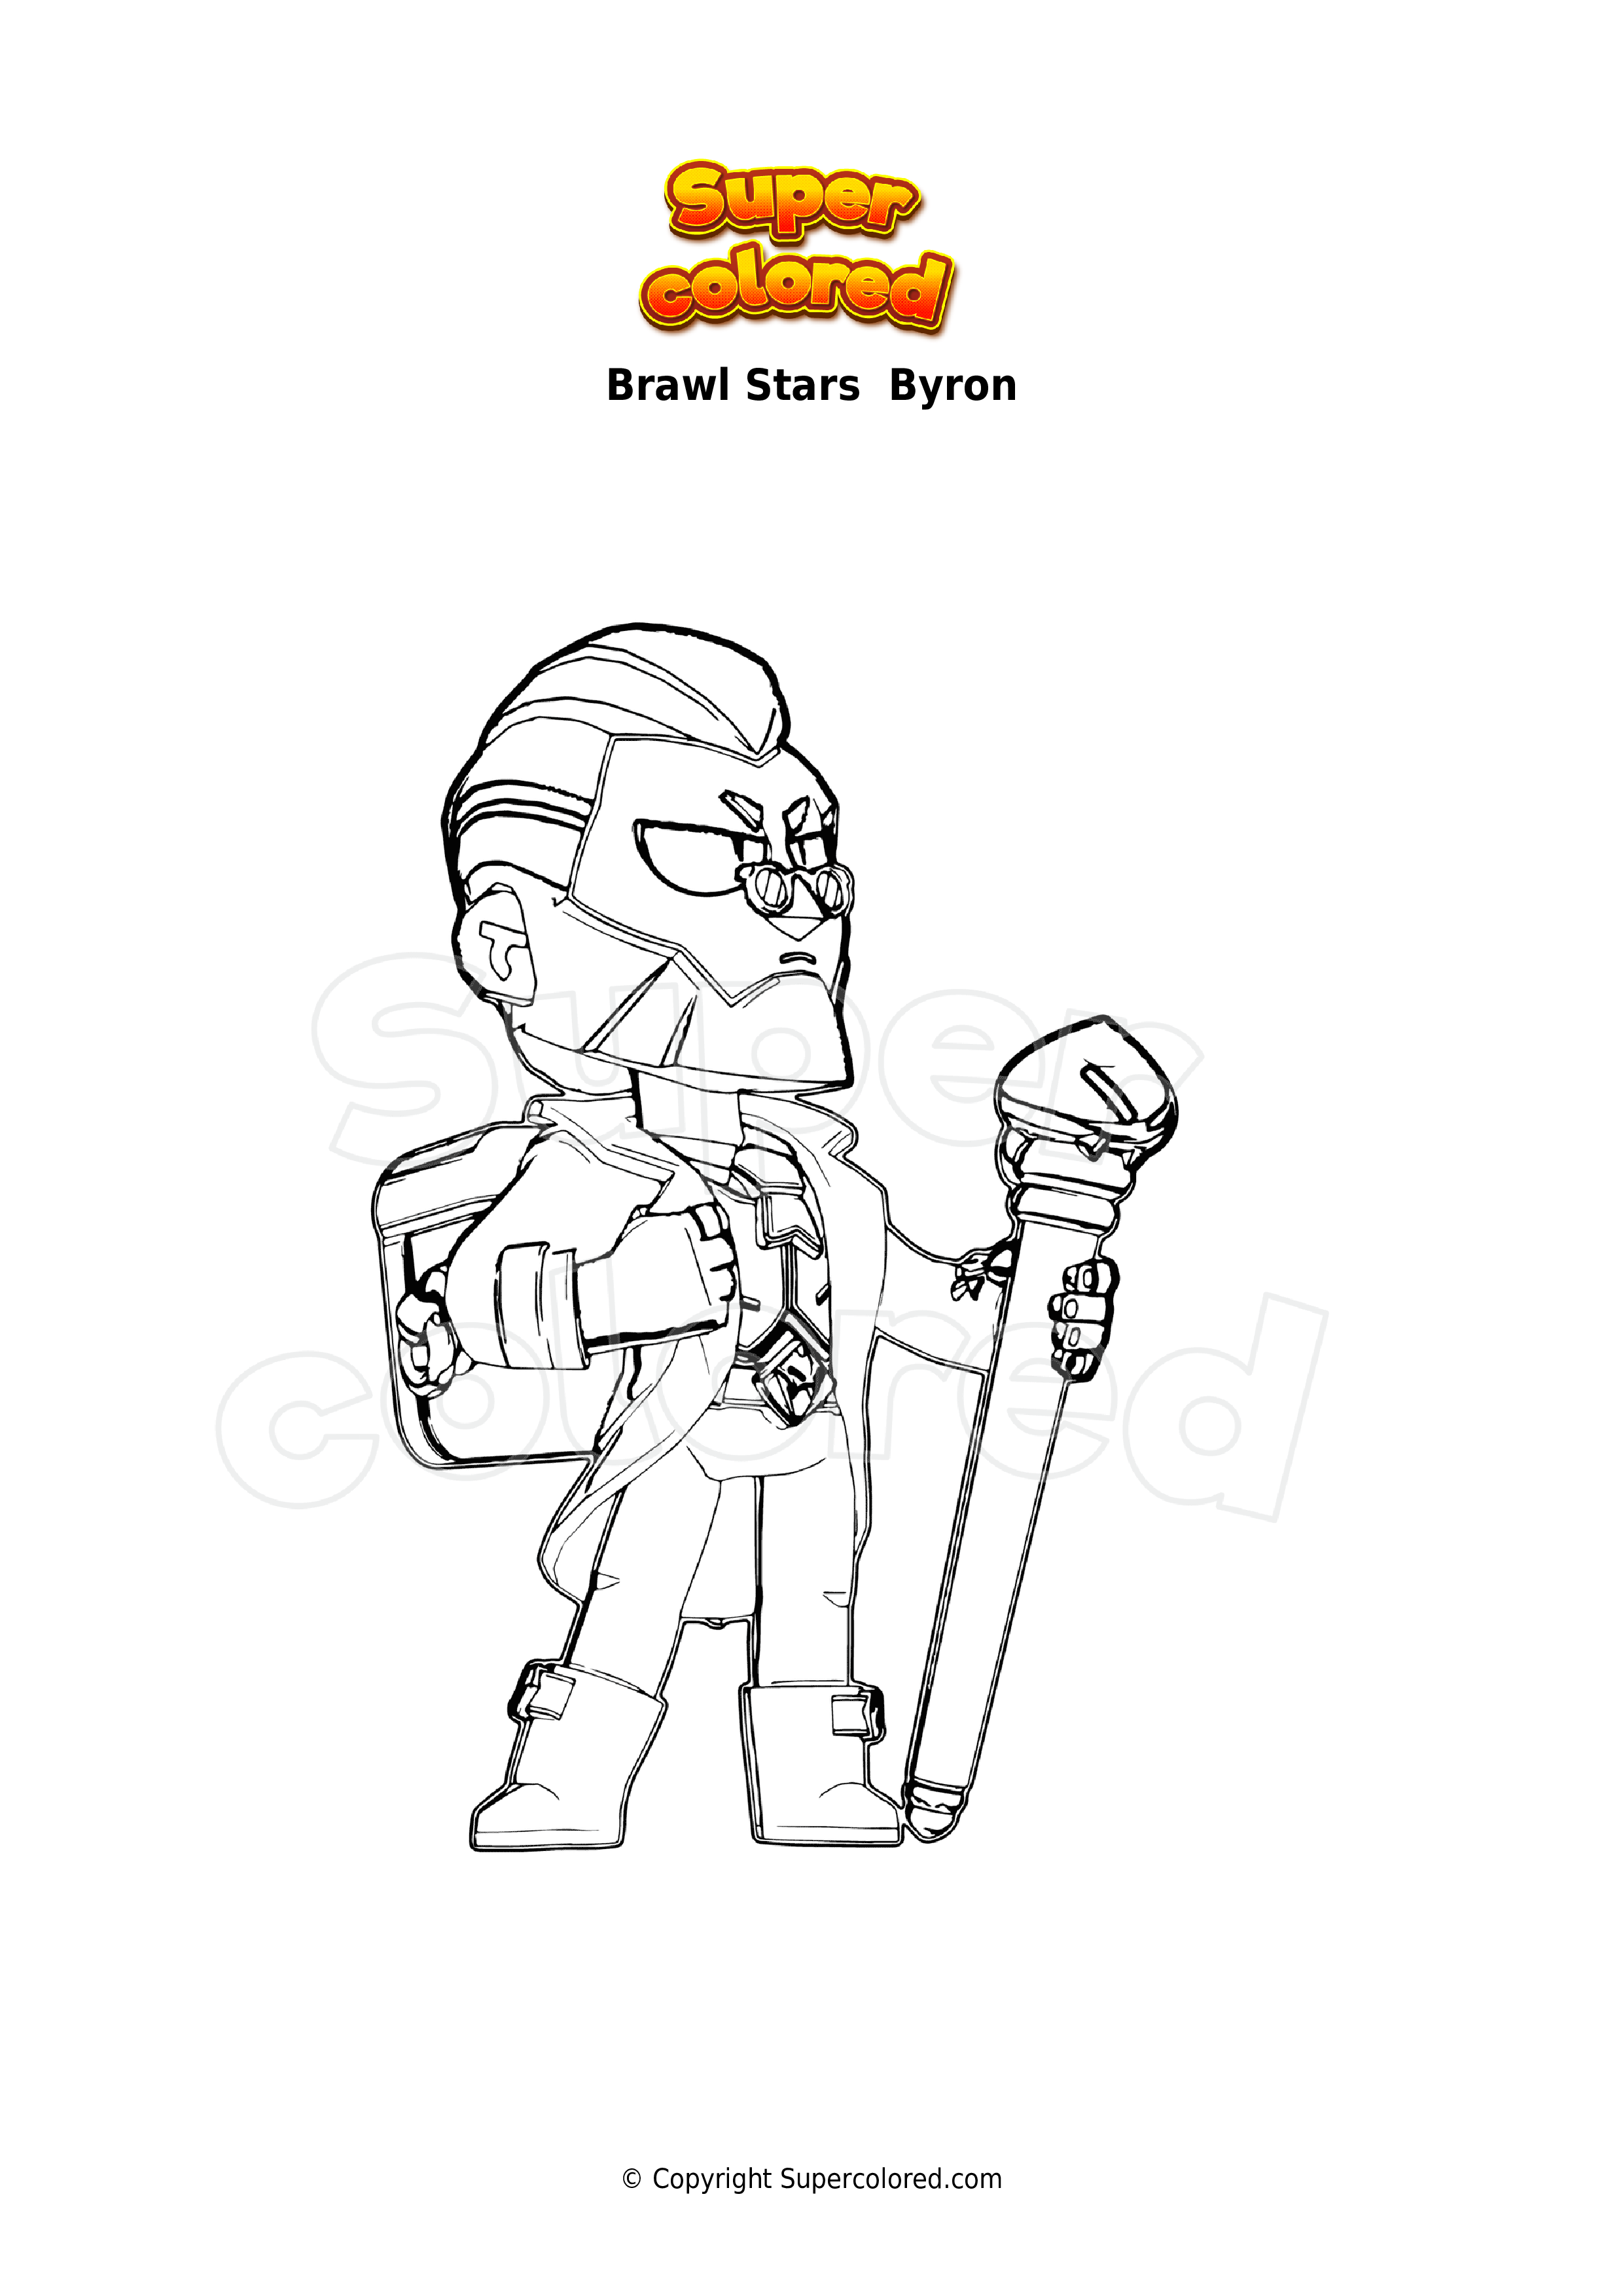 Disegno Da Colorare Brawl Stars Byron Supercolored Com - disegni di personaggi di brawl stars da colorare